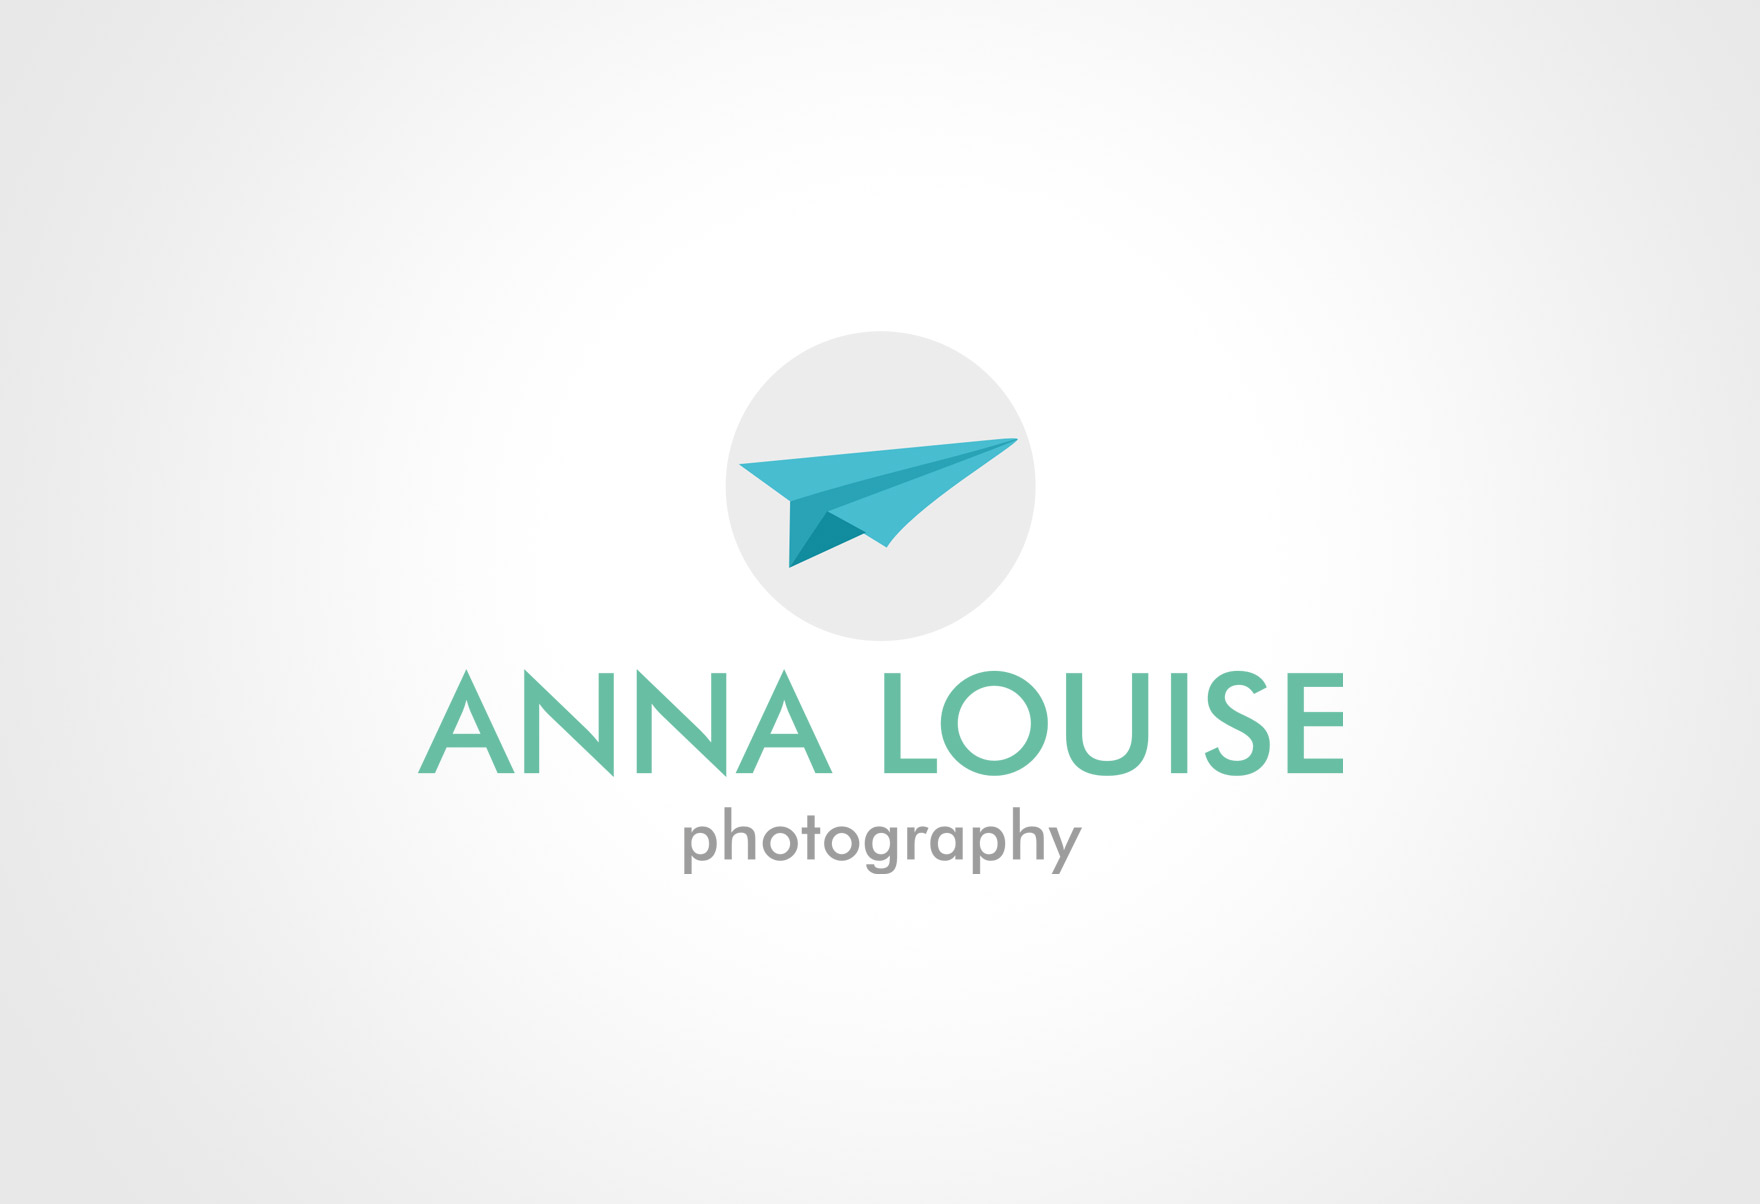 Freelance Graphic Designer Logos